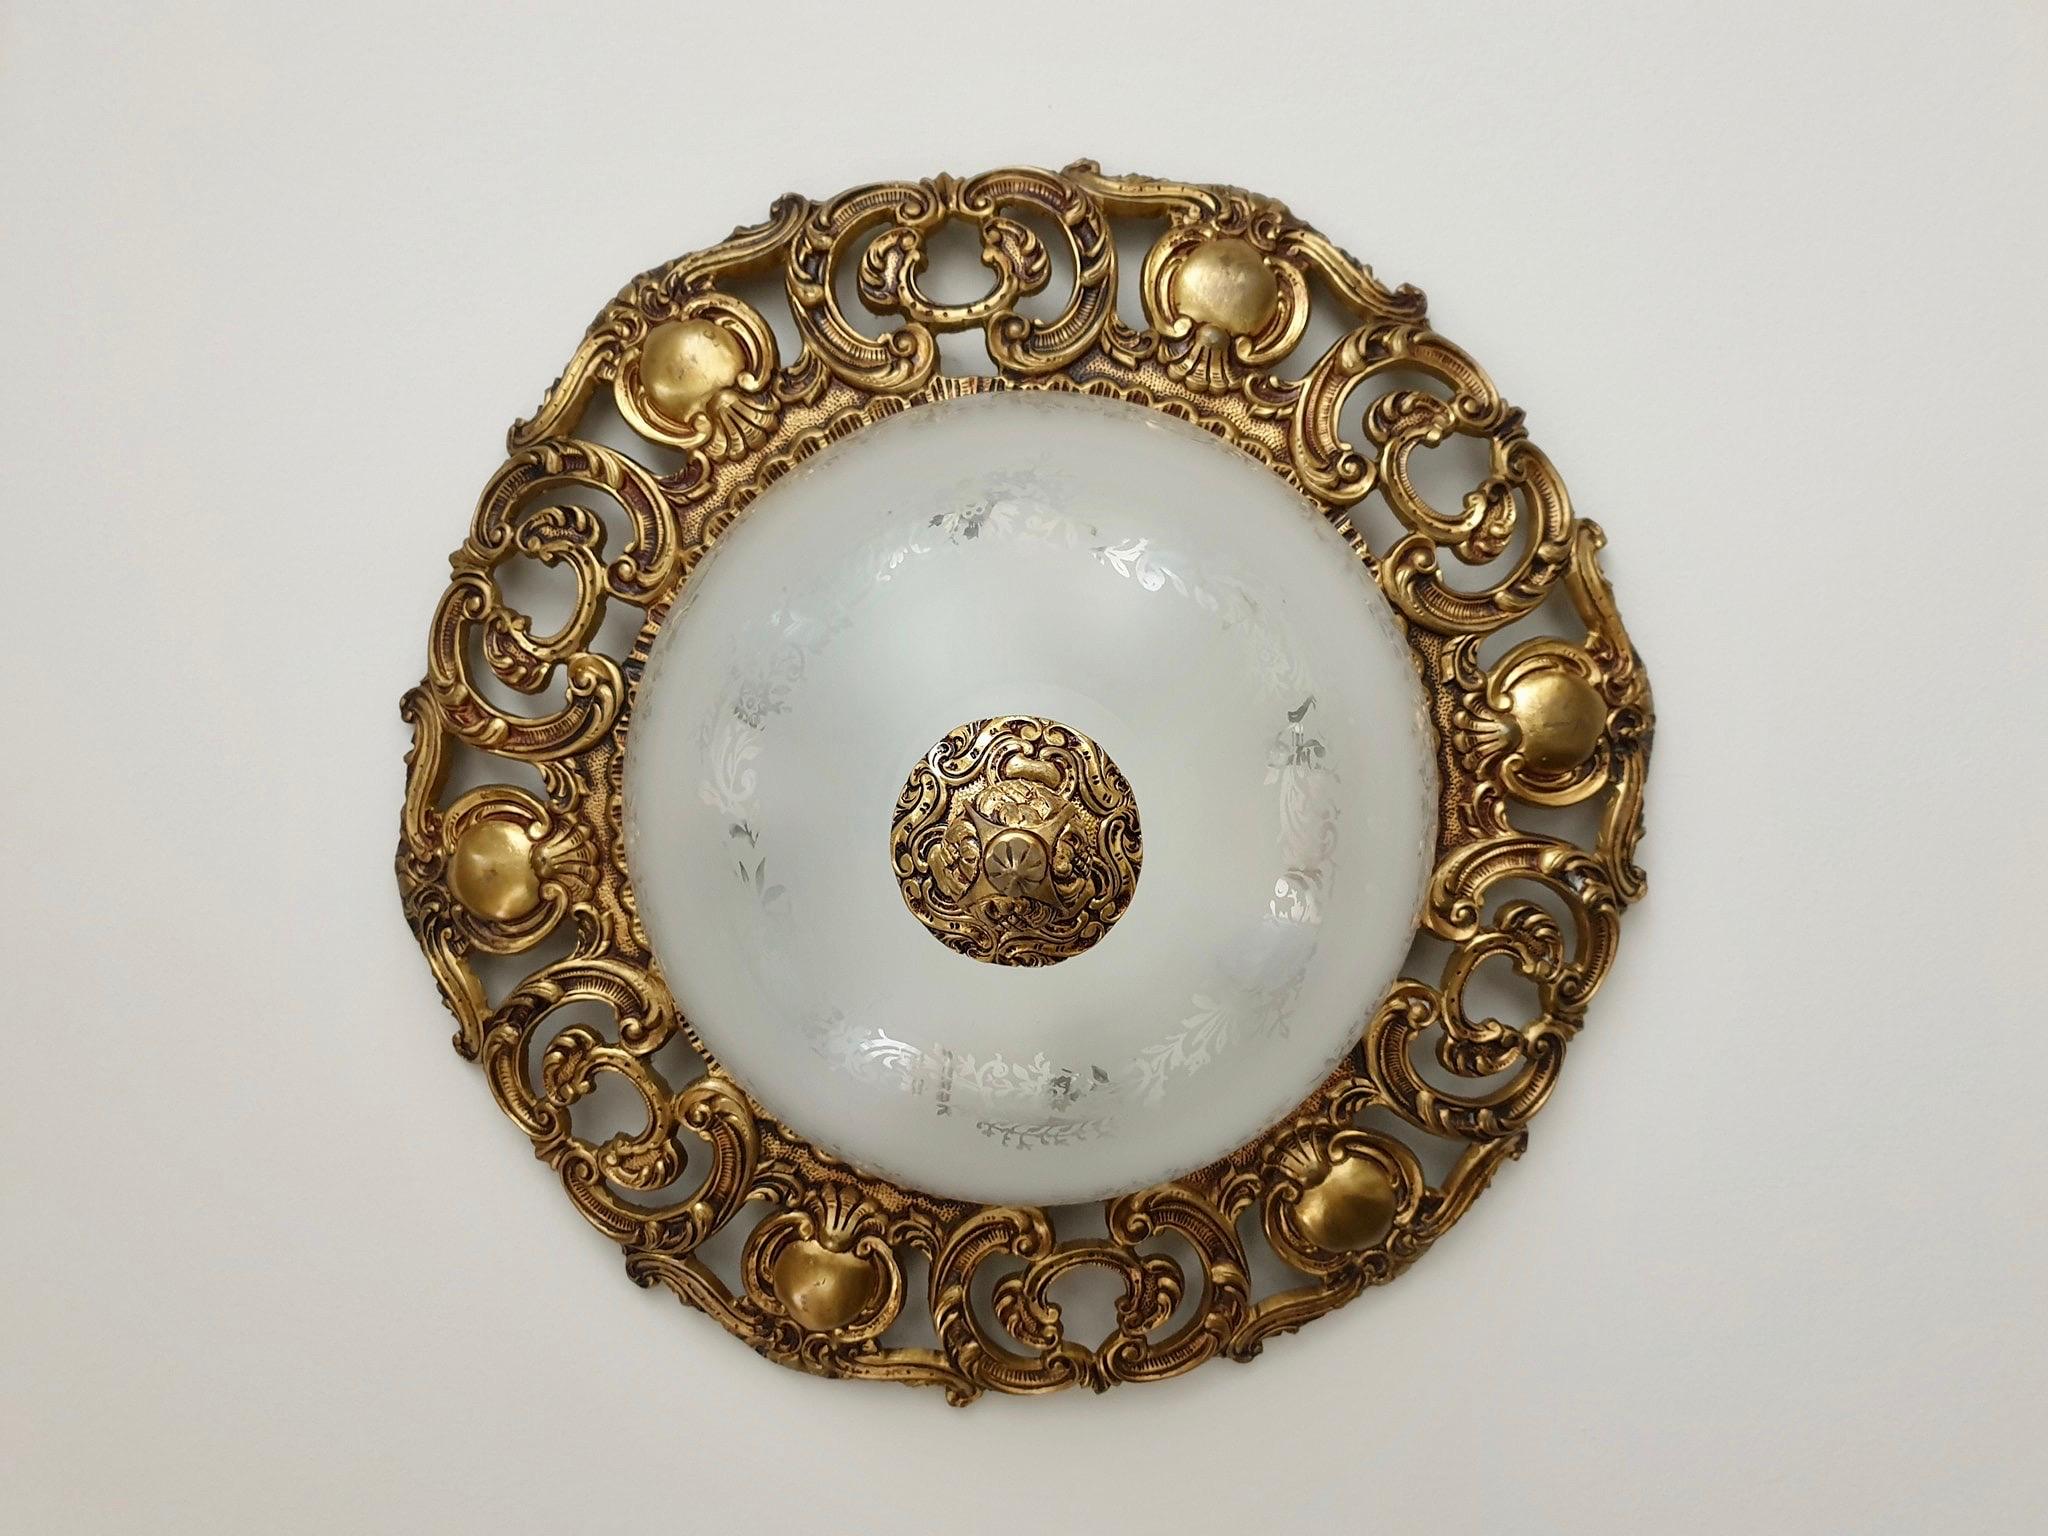 Italienische Einbauleuchte aus Murano-Glas und Messing.
Maße: Durchmesser 50 cm.
Höhe 23 cm.